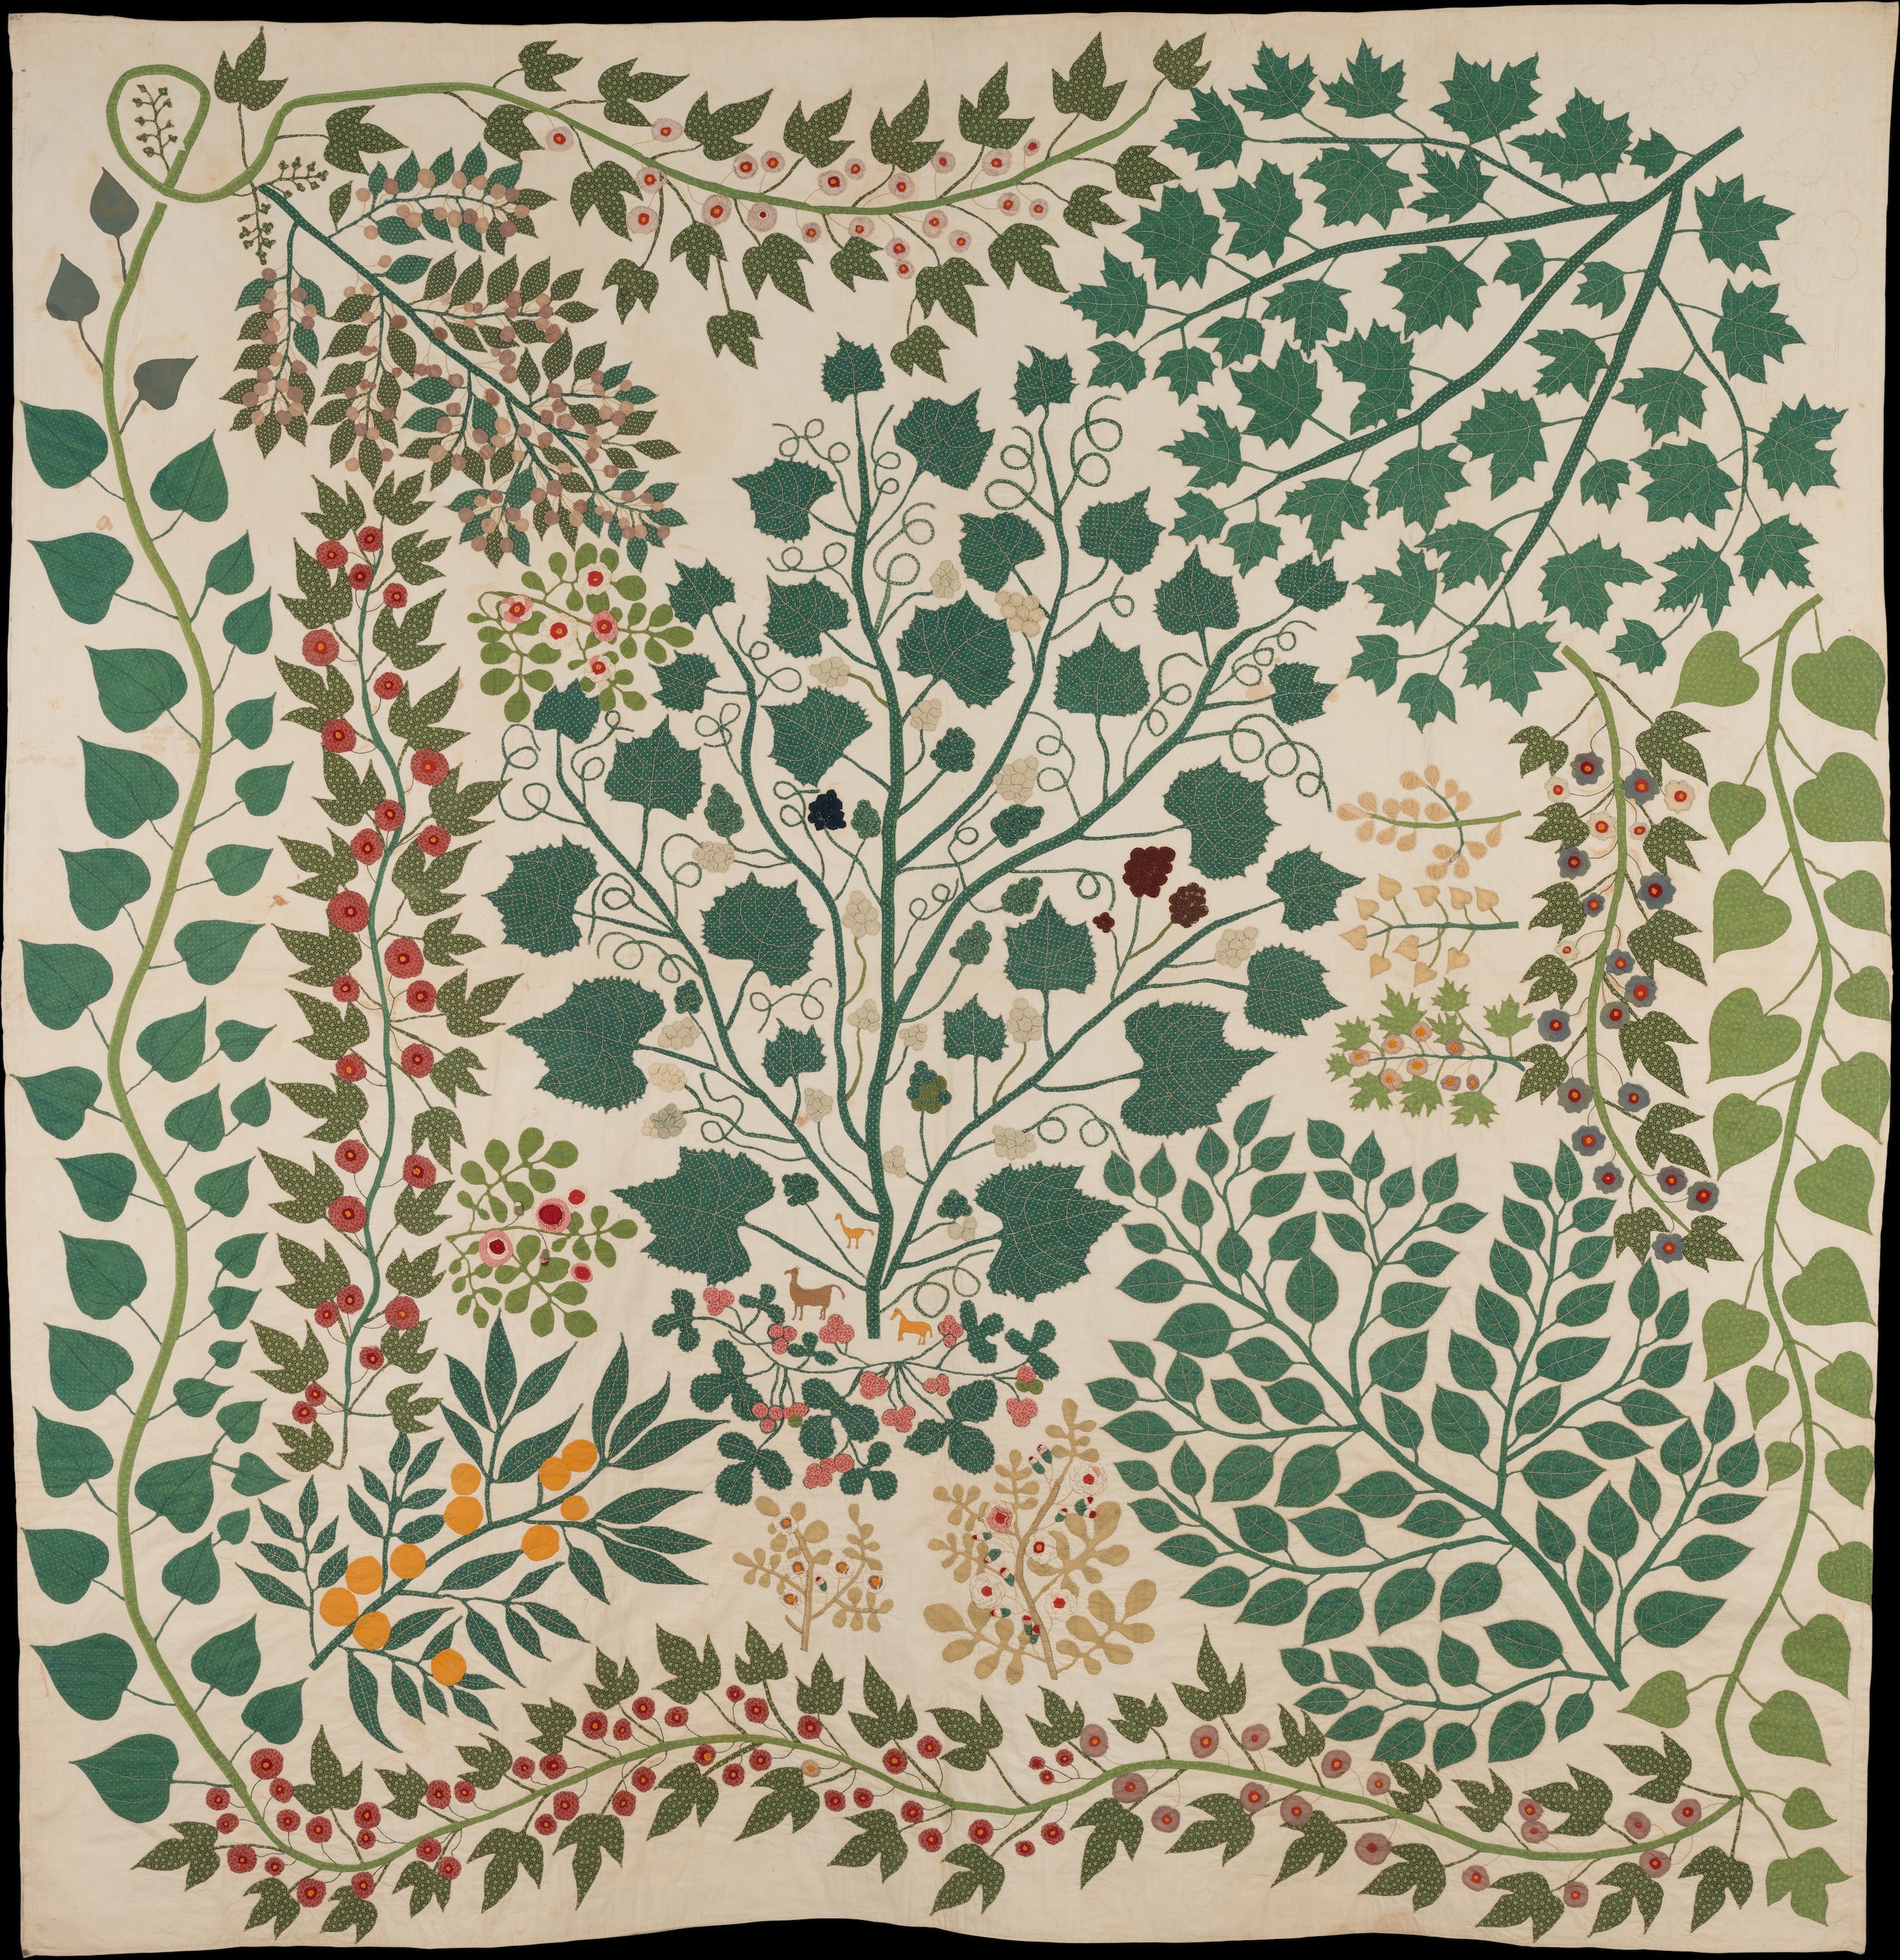 树枝和藤蔓被子 by 埃内斯廷 扎姆赛尔 - 约1875年 - 223.5 × 218.4 cm 